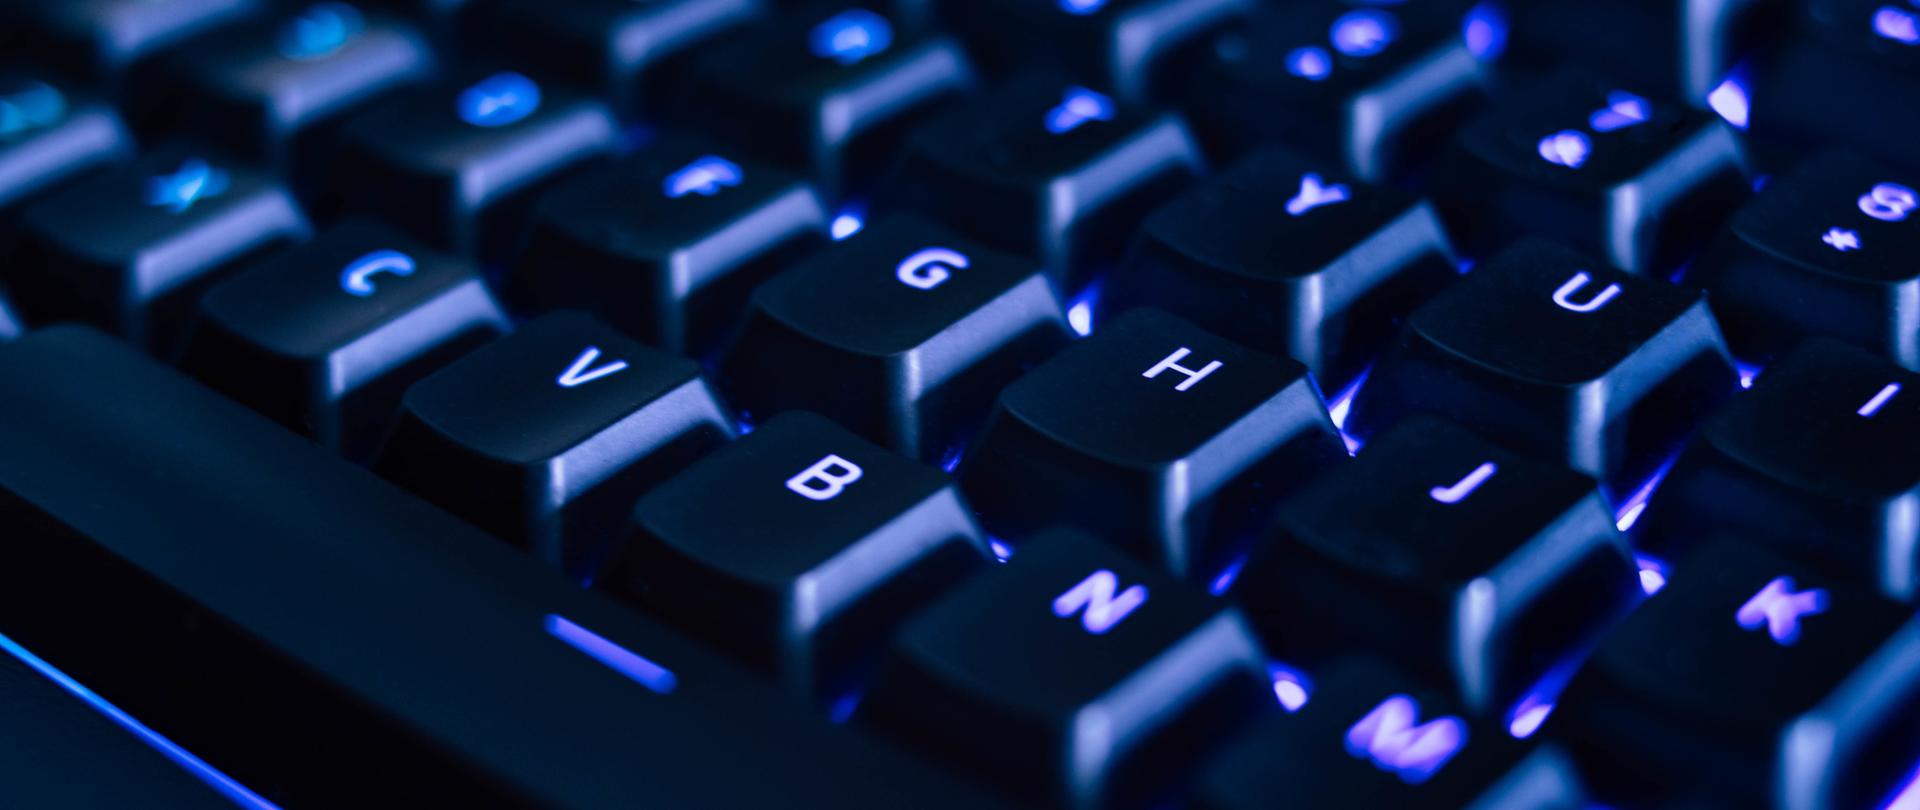 Częściowy widok klawiatury komputerowej podświetlonej na niebiesko. 